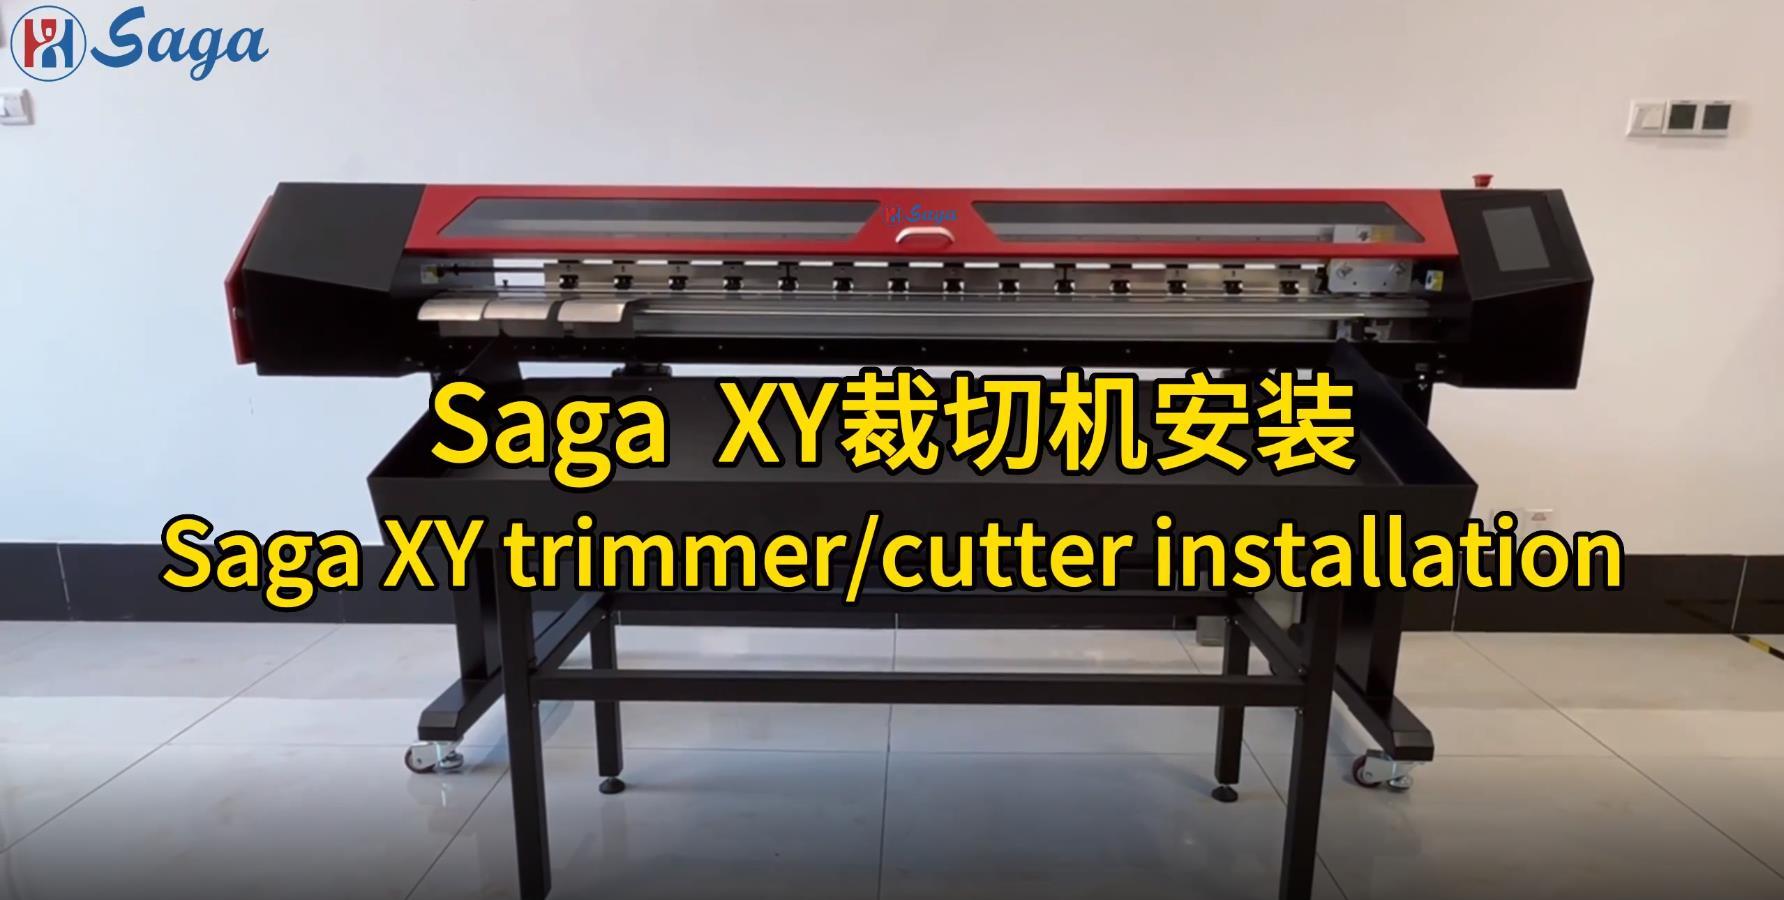 Saga XY trimmer/cutter installation